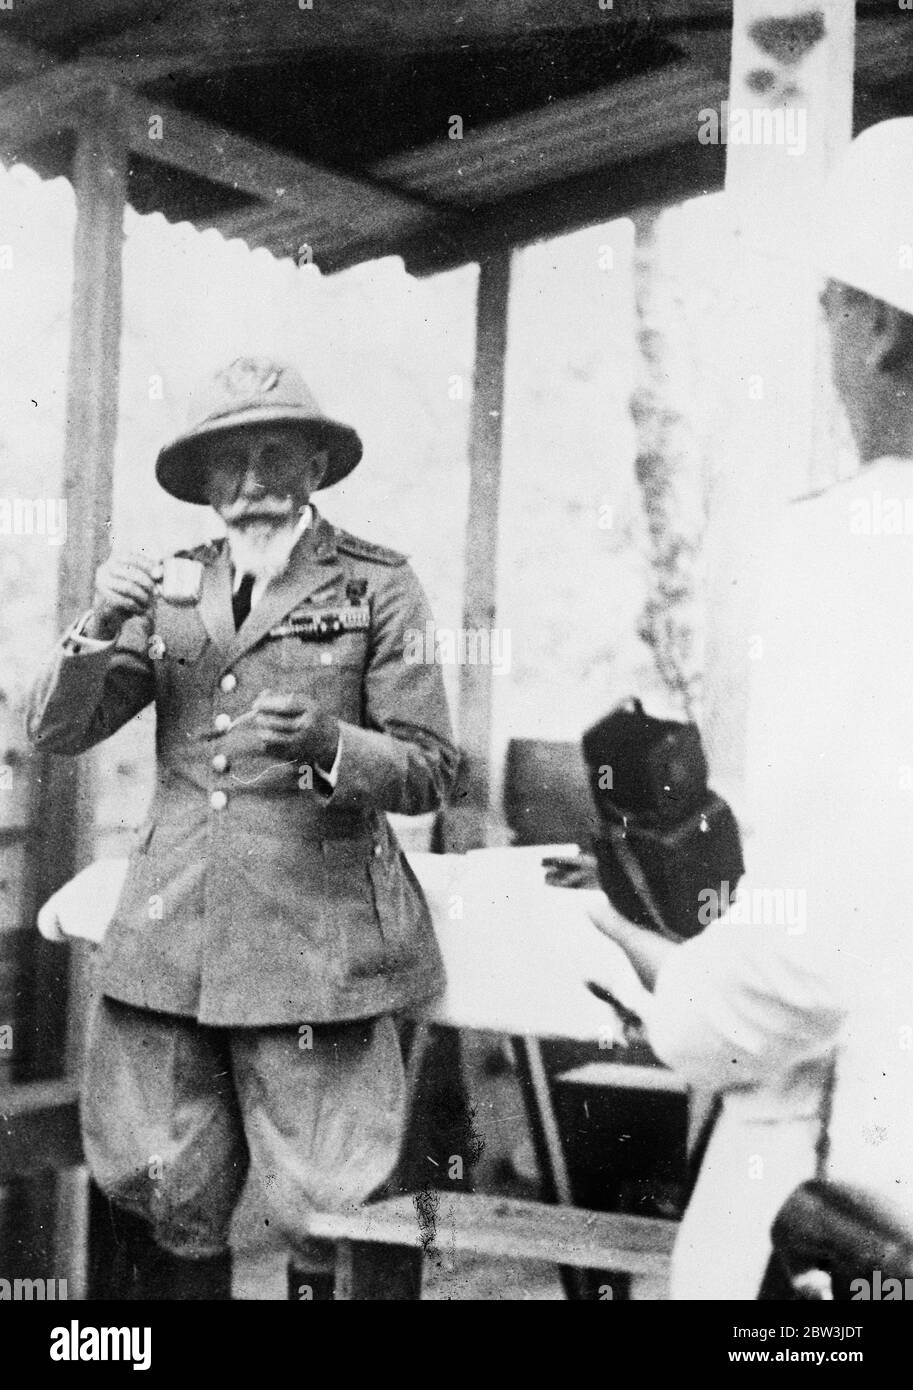 Eine Tasse Kaffee für den General . General de Bono, italienischer Oberbefehlshaber in Ostafrika, über eine informelle Tasse Kaffee genießen. 13. September 1935 Stockfoto